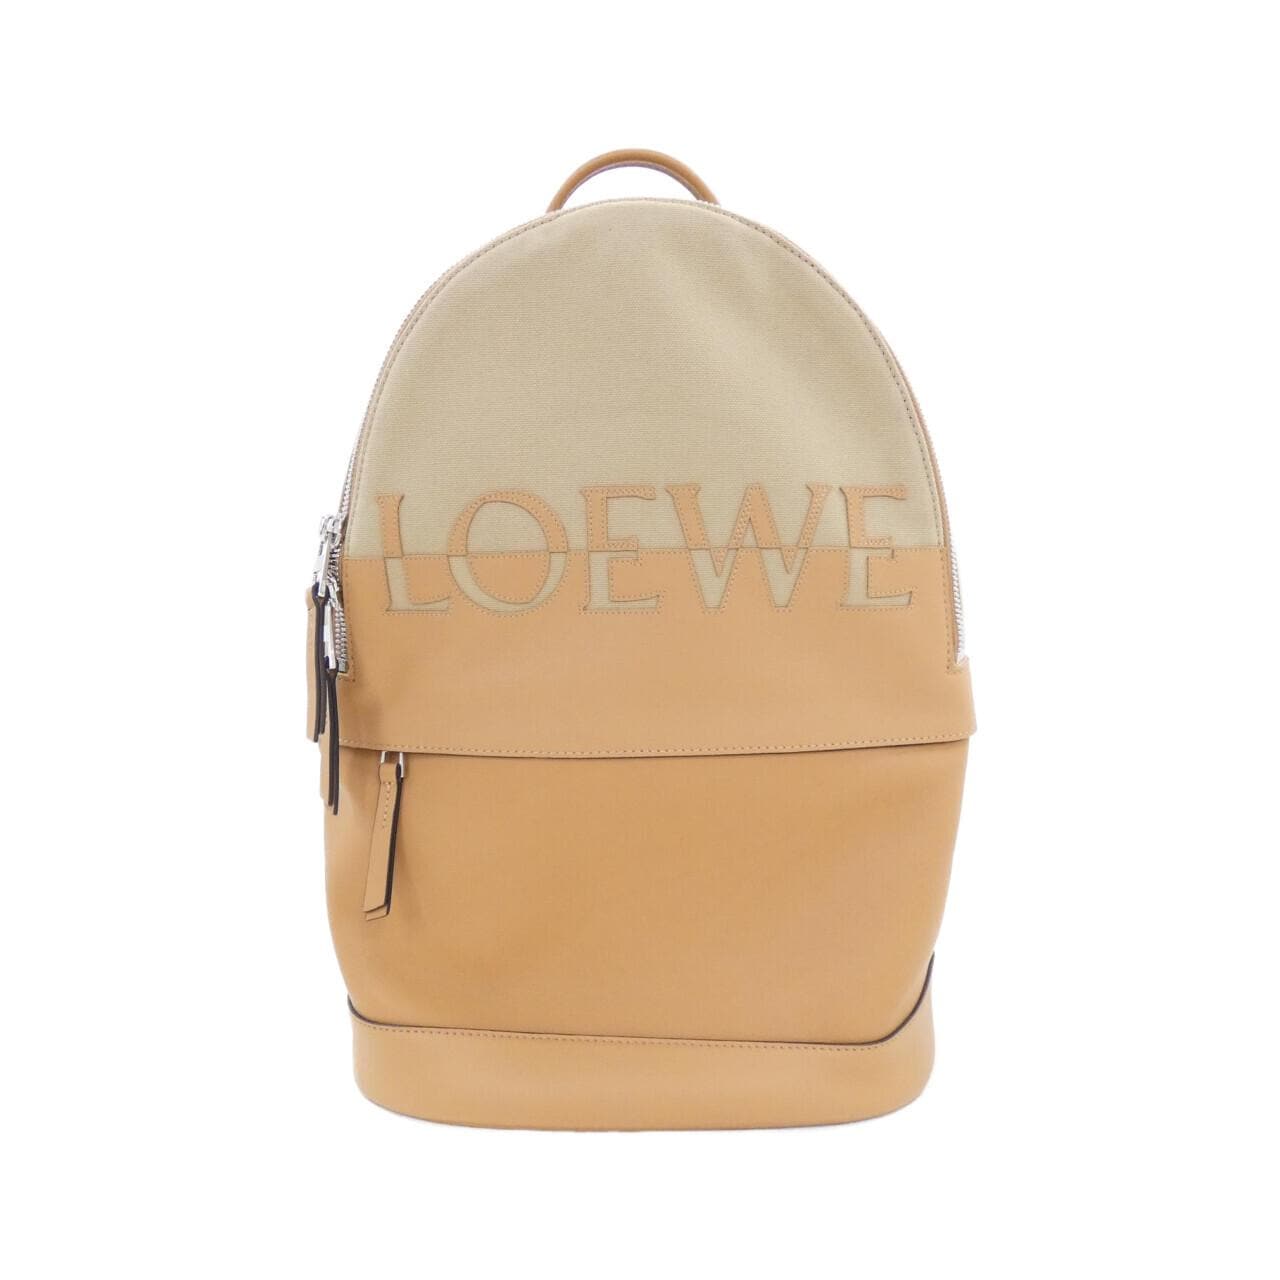 [新品] Loewe 圆形背包 B314278X01双肩包